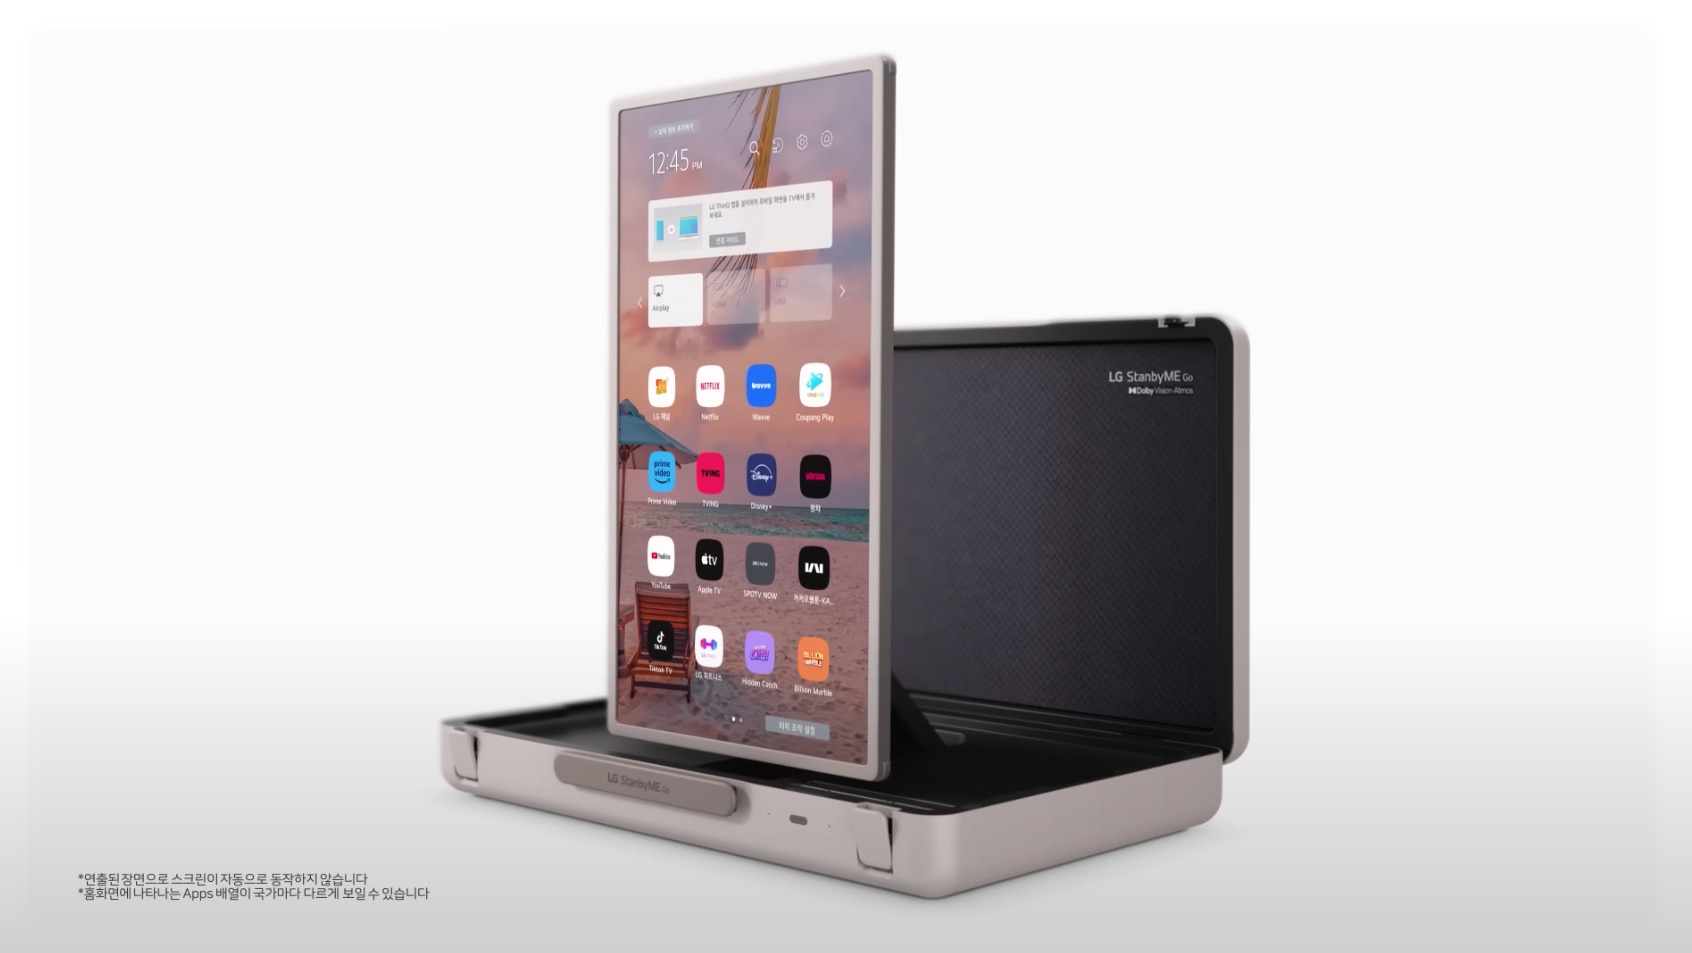 Un grand écran tactile et sonorisé dans une malette : LG tient-il un nouveau concept révolutionnaire ?